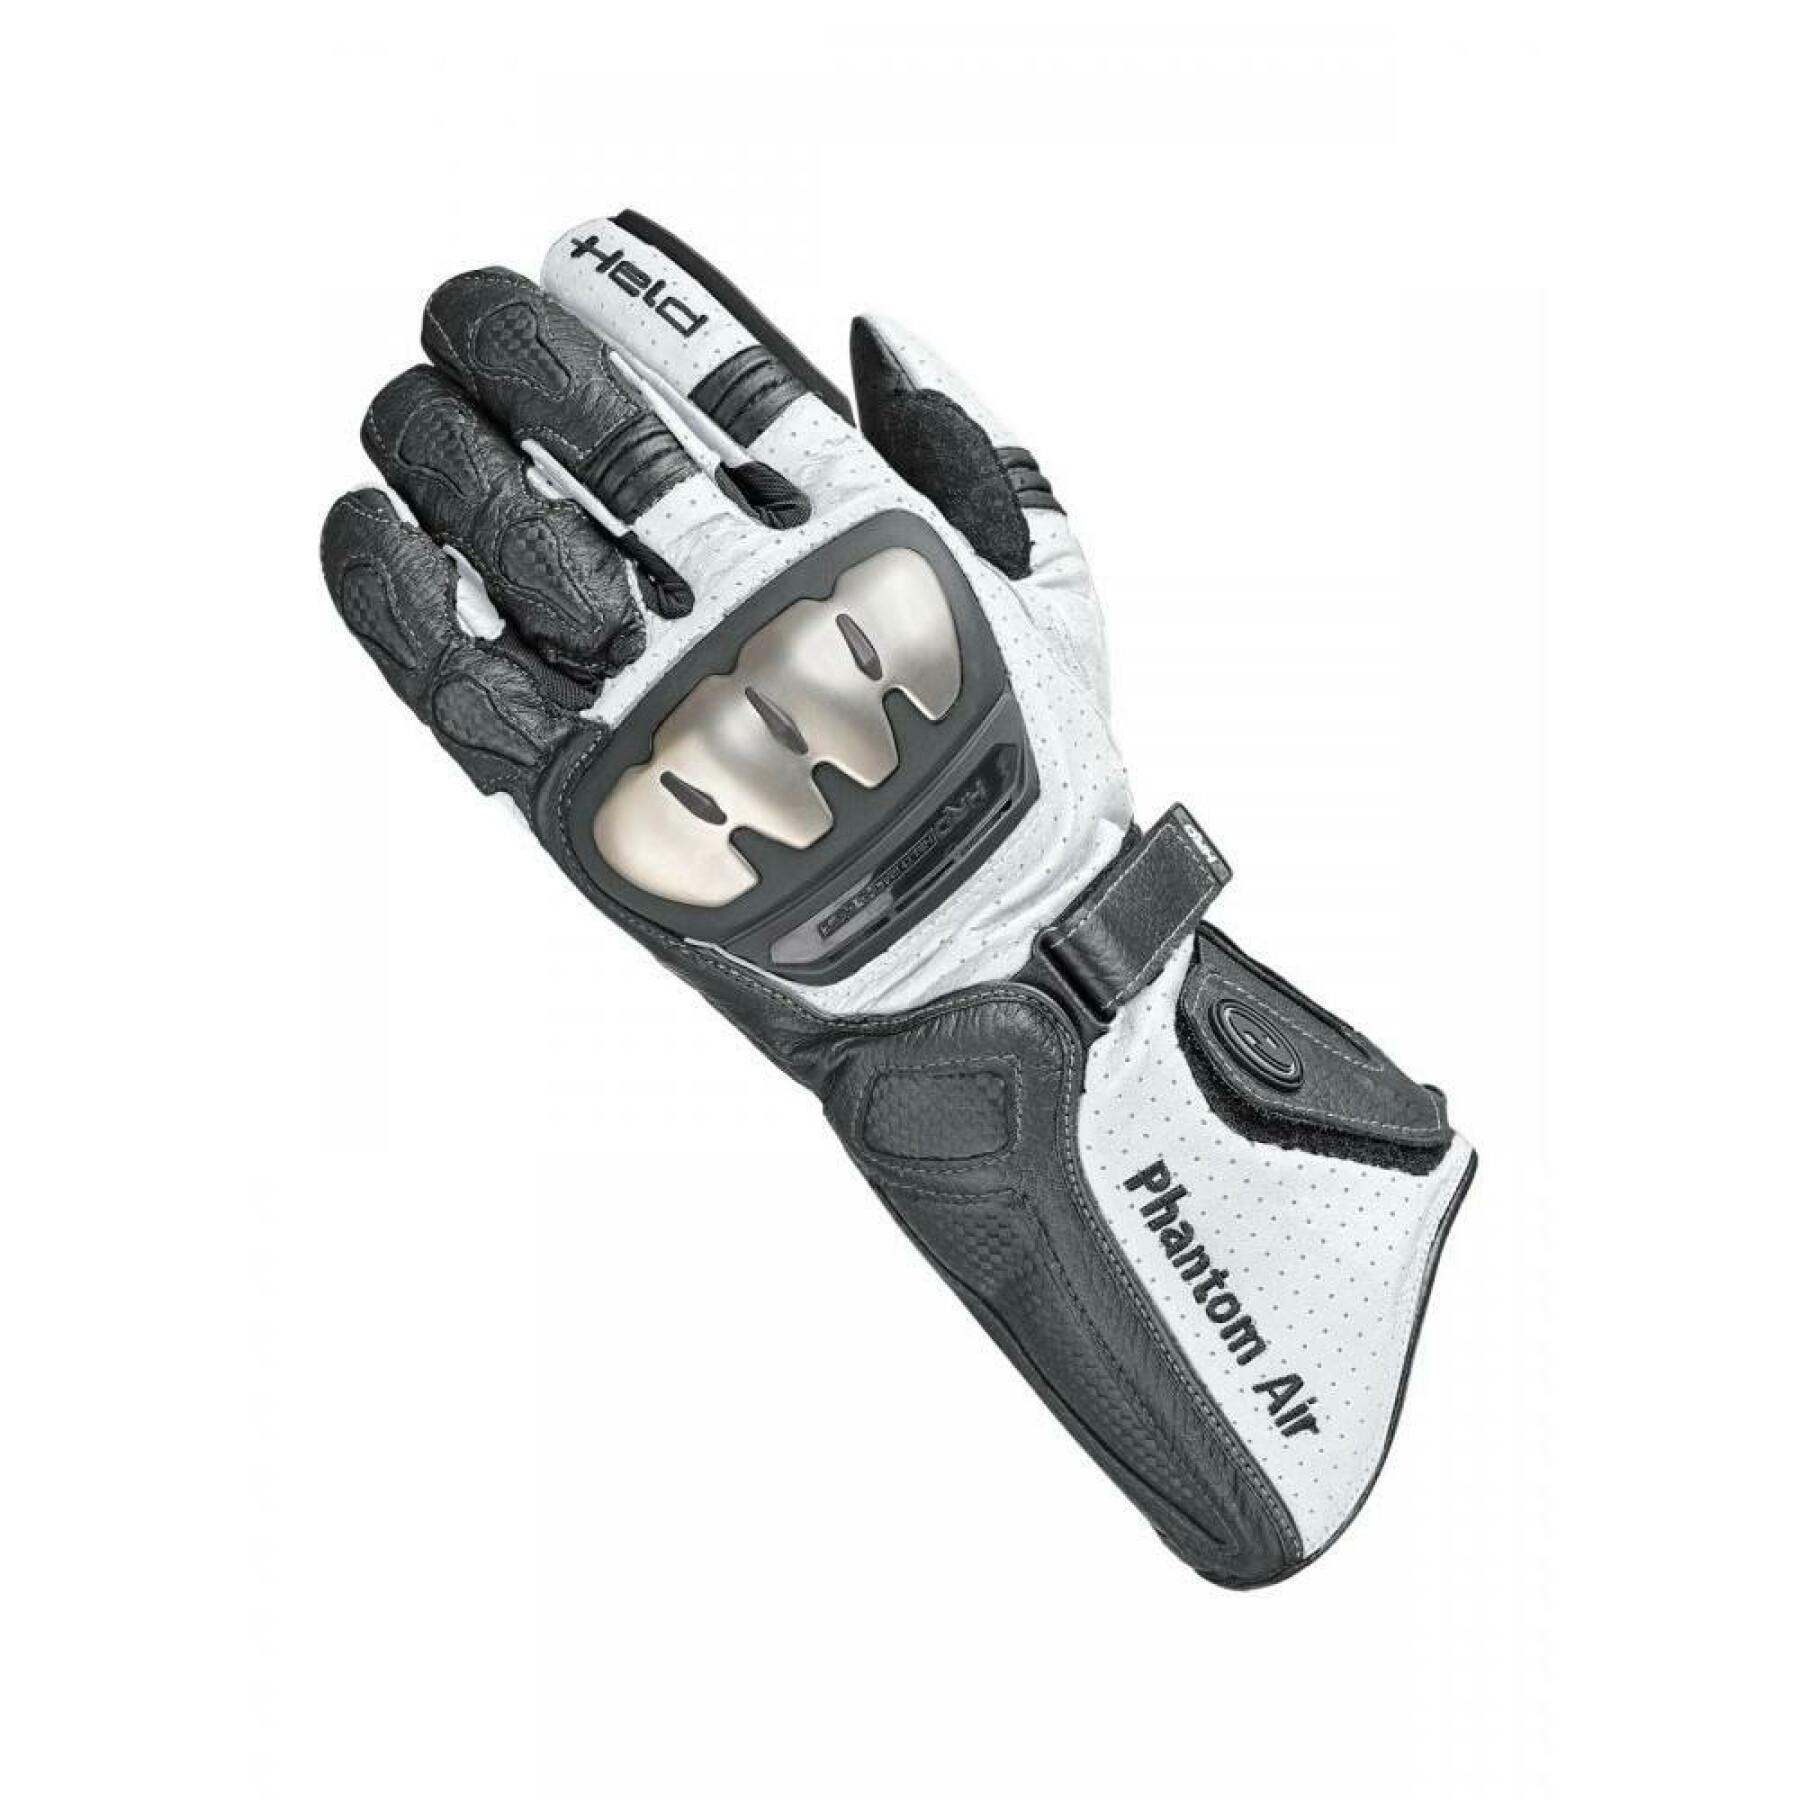 Motorrad-Racing-Handschuhe Held phantom air